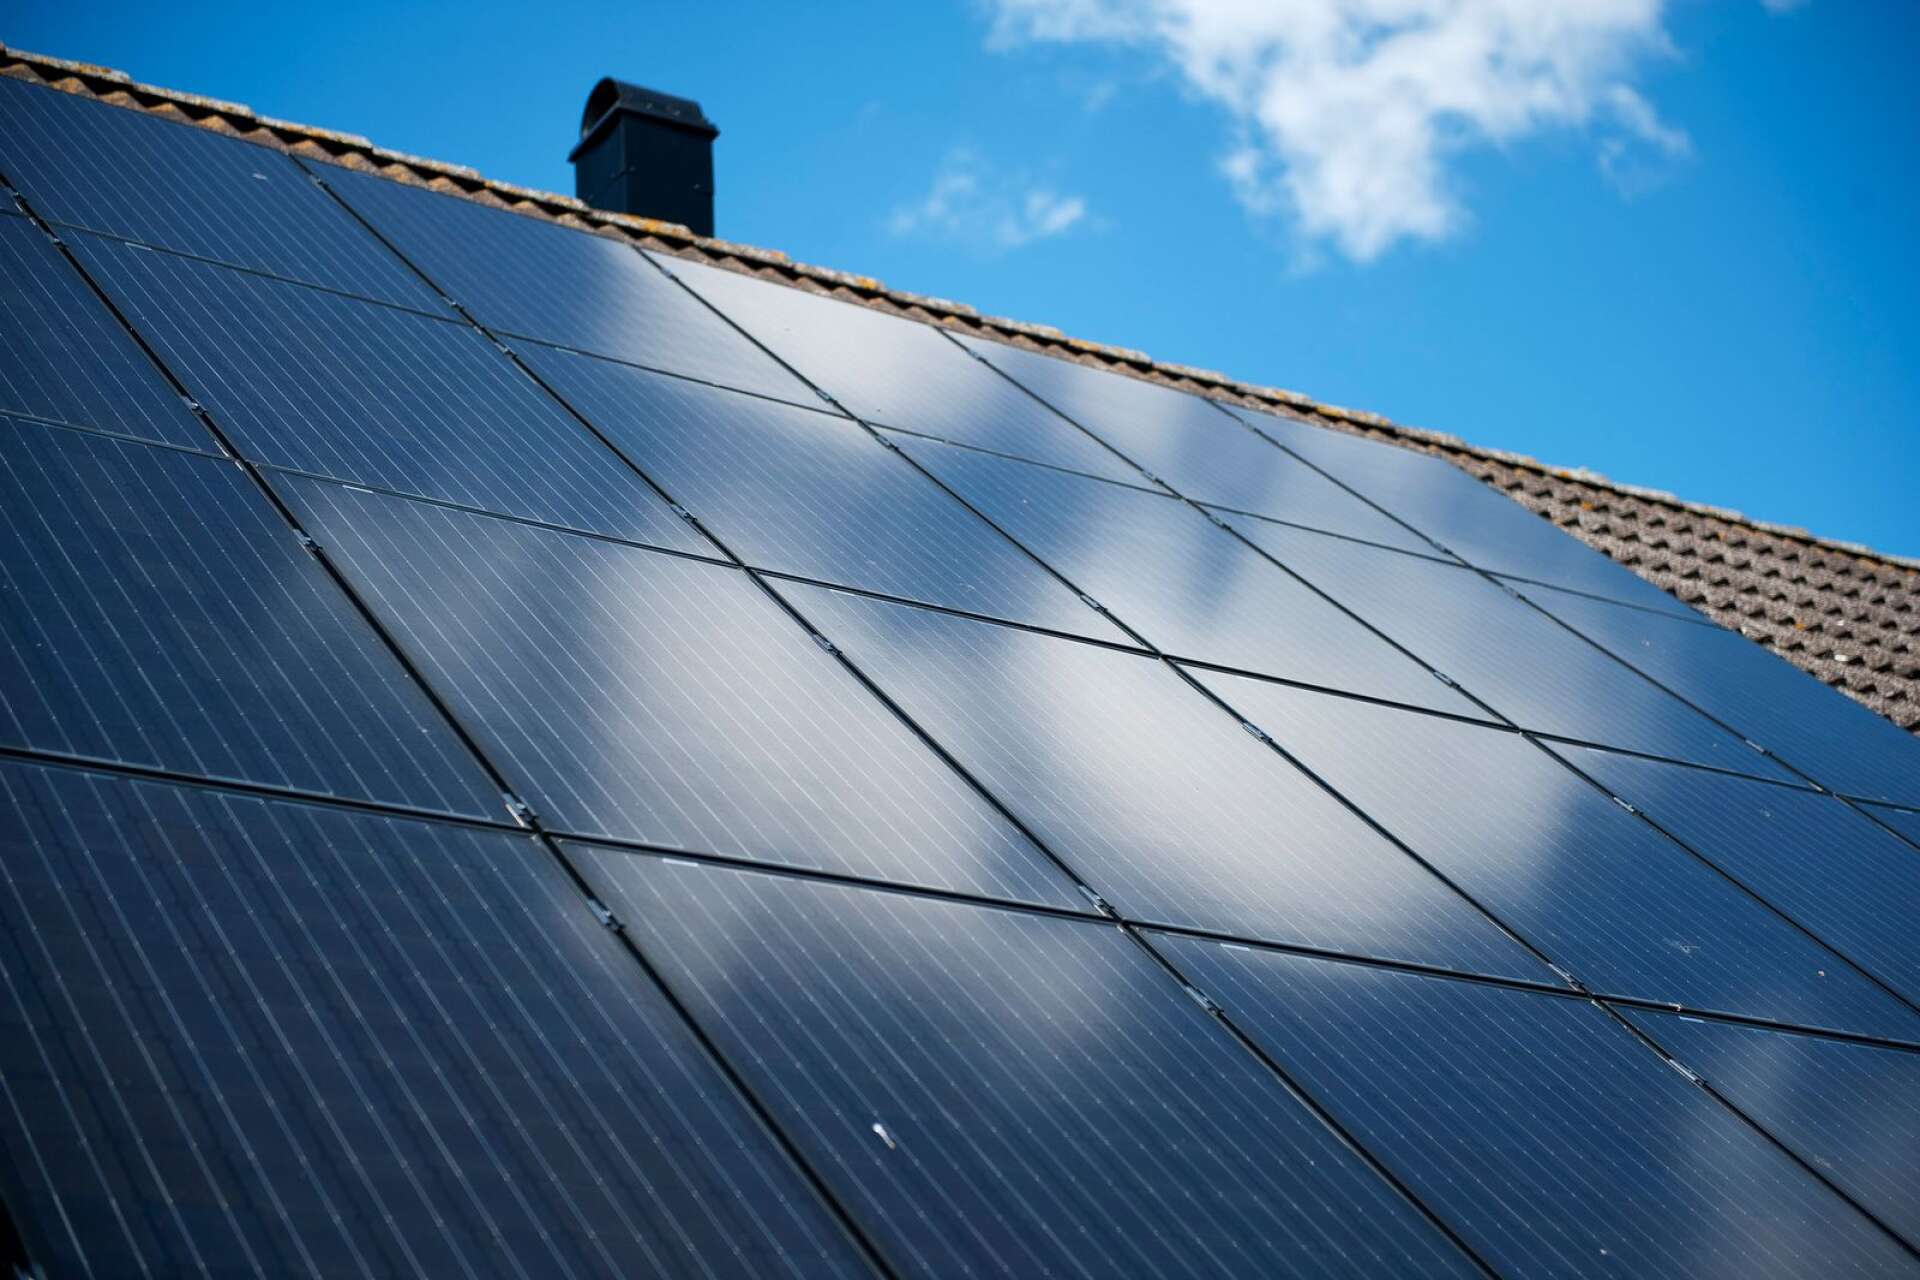 Tack vare det gröna avdraget har nära 63 000 småhusägare vågat ta klivet och under 2021 investerat över fyra miljarder i grön teknik, det vill säga solceller, laddare och batterier, skriver Anna Werner.